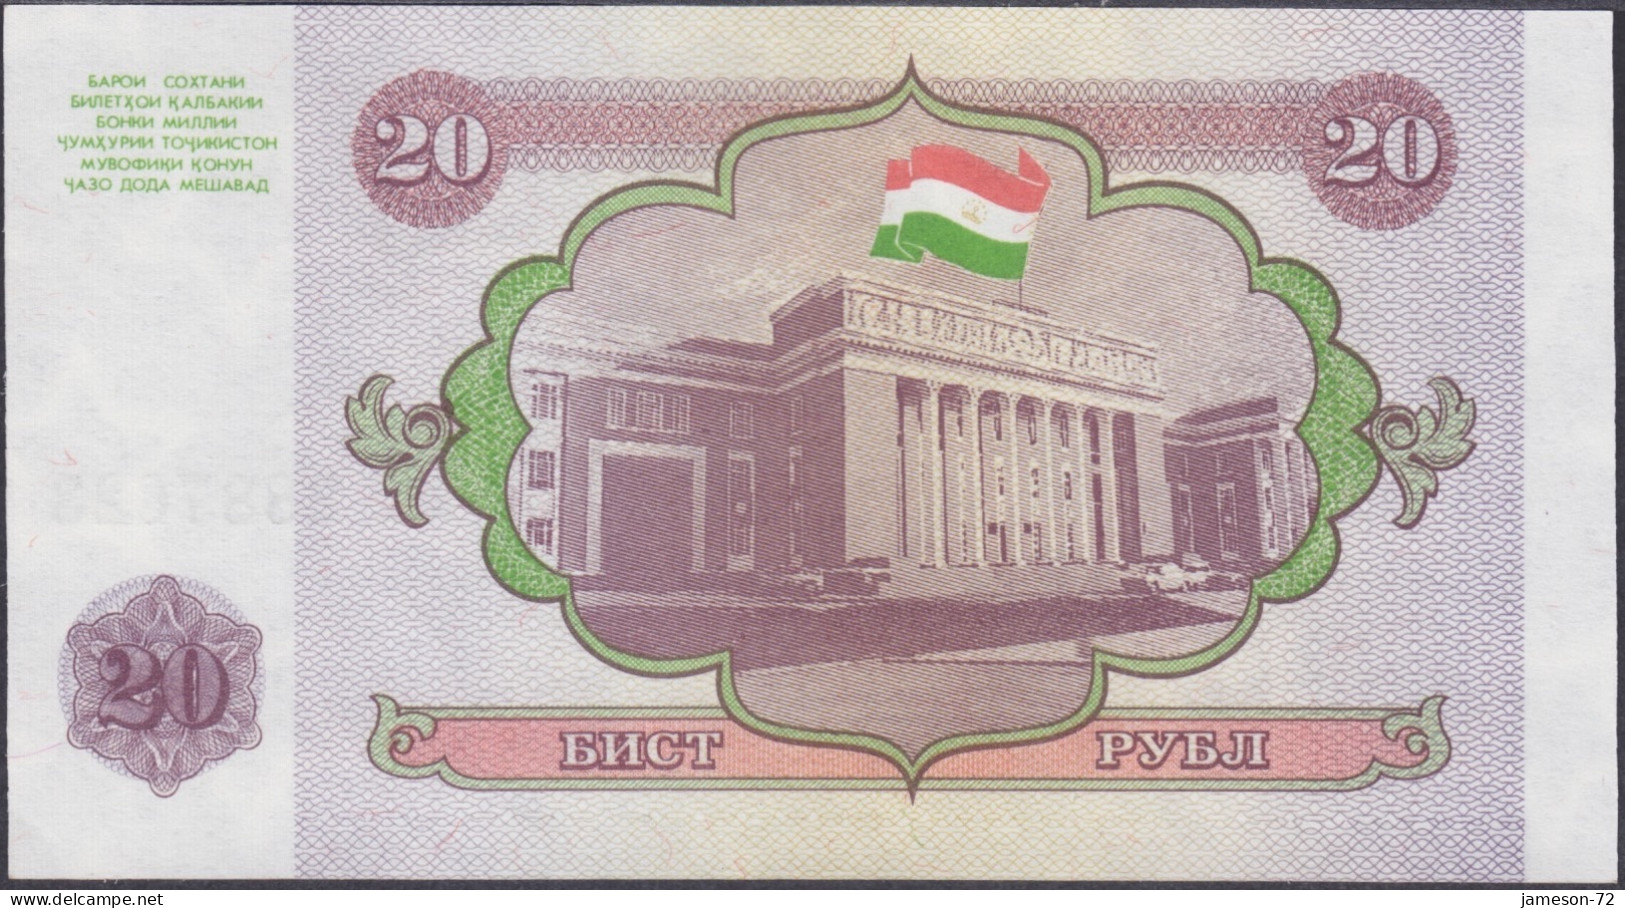 TAJIKISTAN - 20 Rubles 1994 P# 4 Asia Banknote - Edelweiss Coins - Tadzjikistan